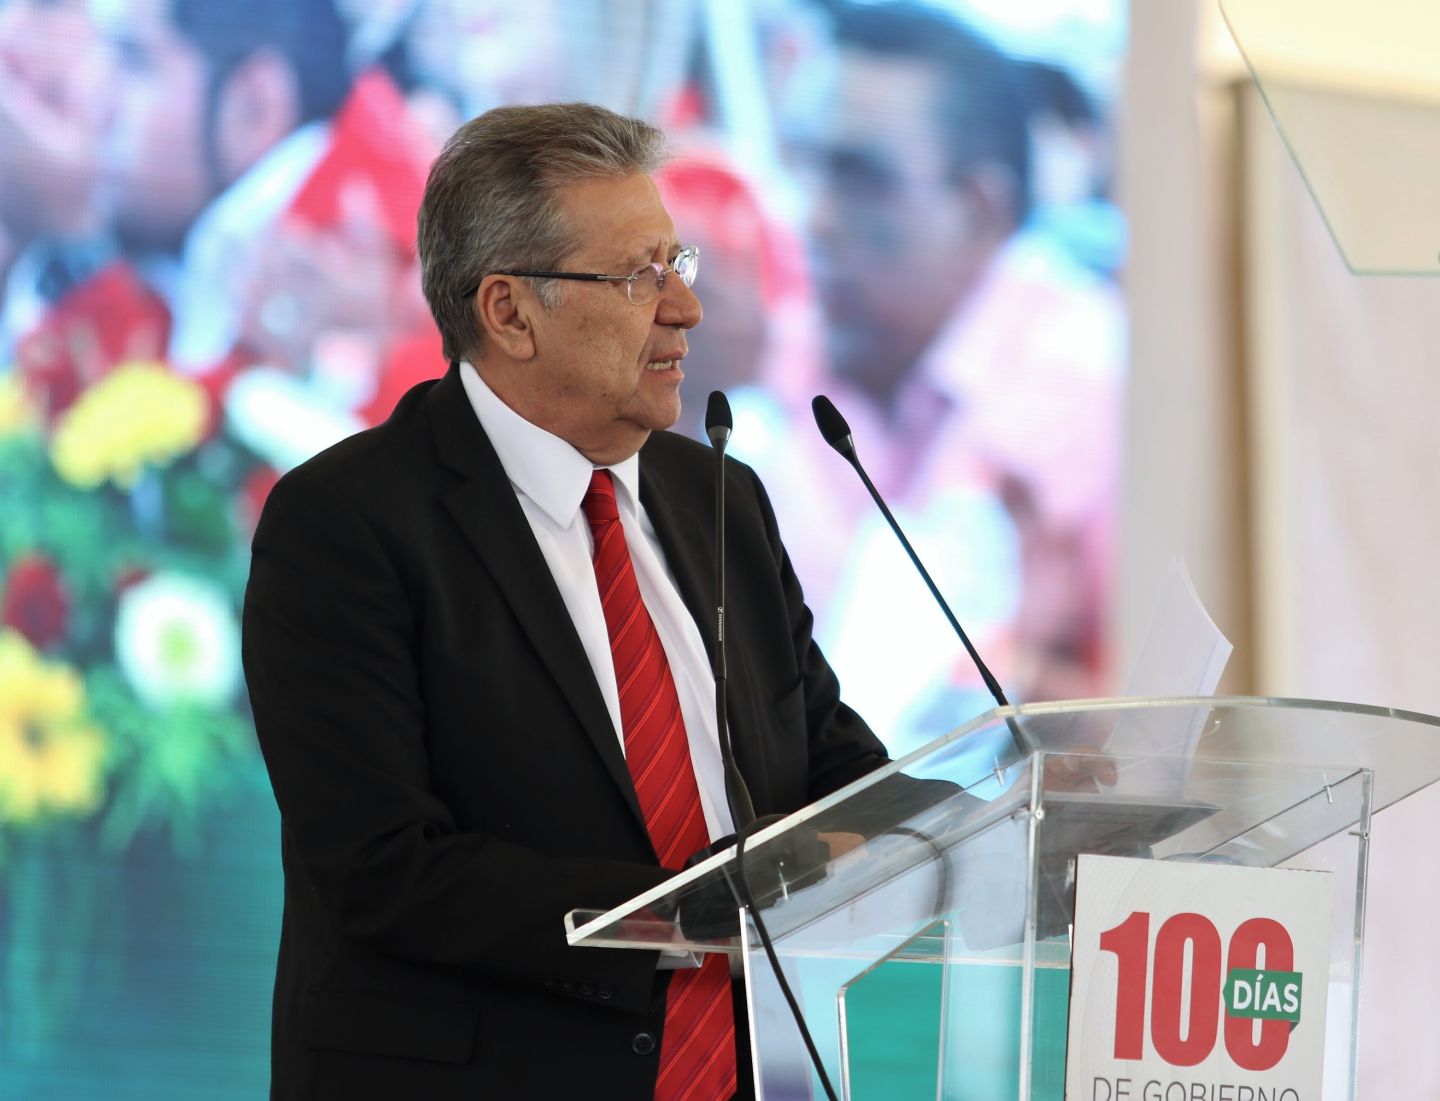 El alcalde presentó su informe de 100 días de gobierno ante más de 12 mil personas en el Recinto Ferial